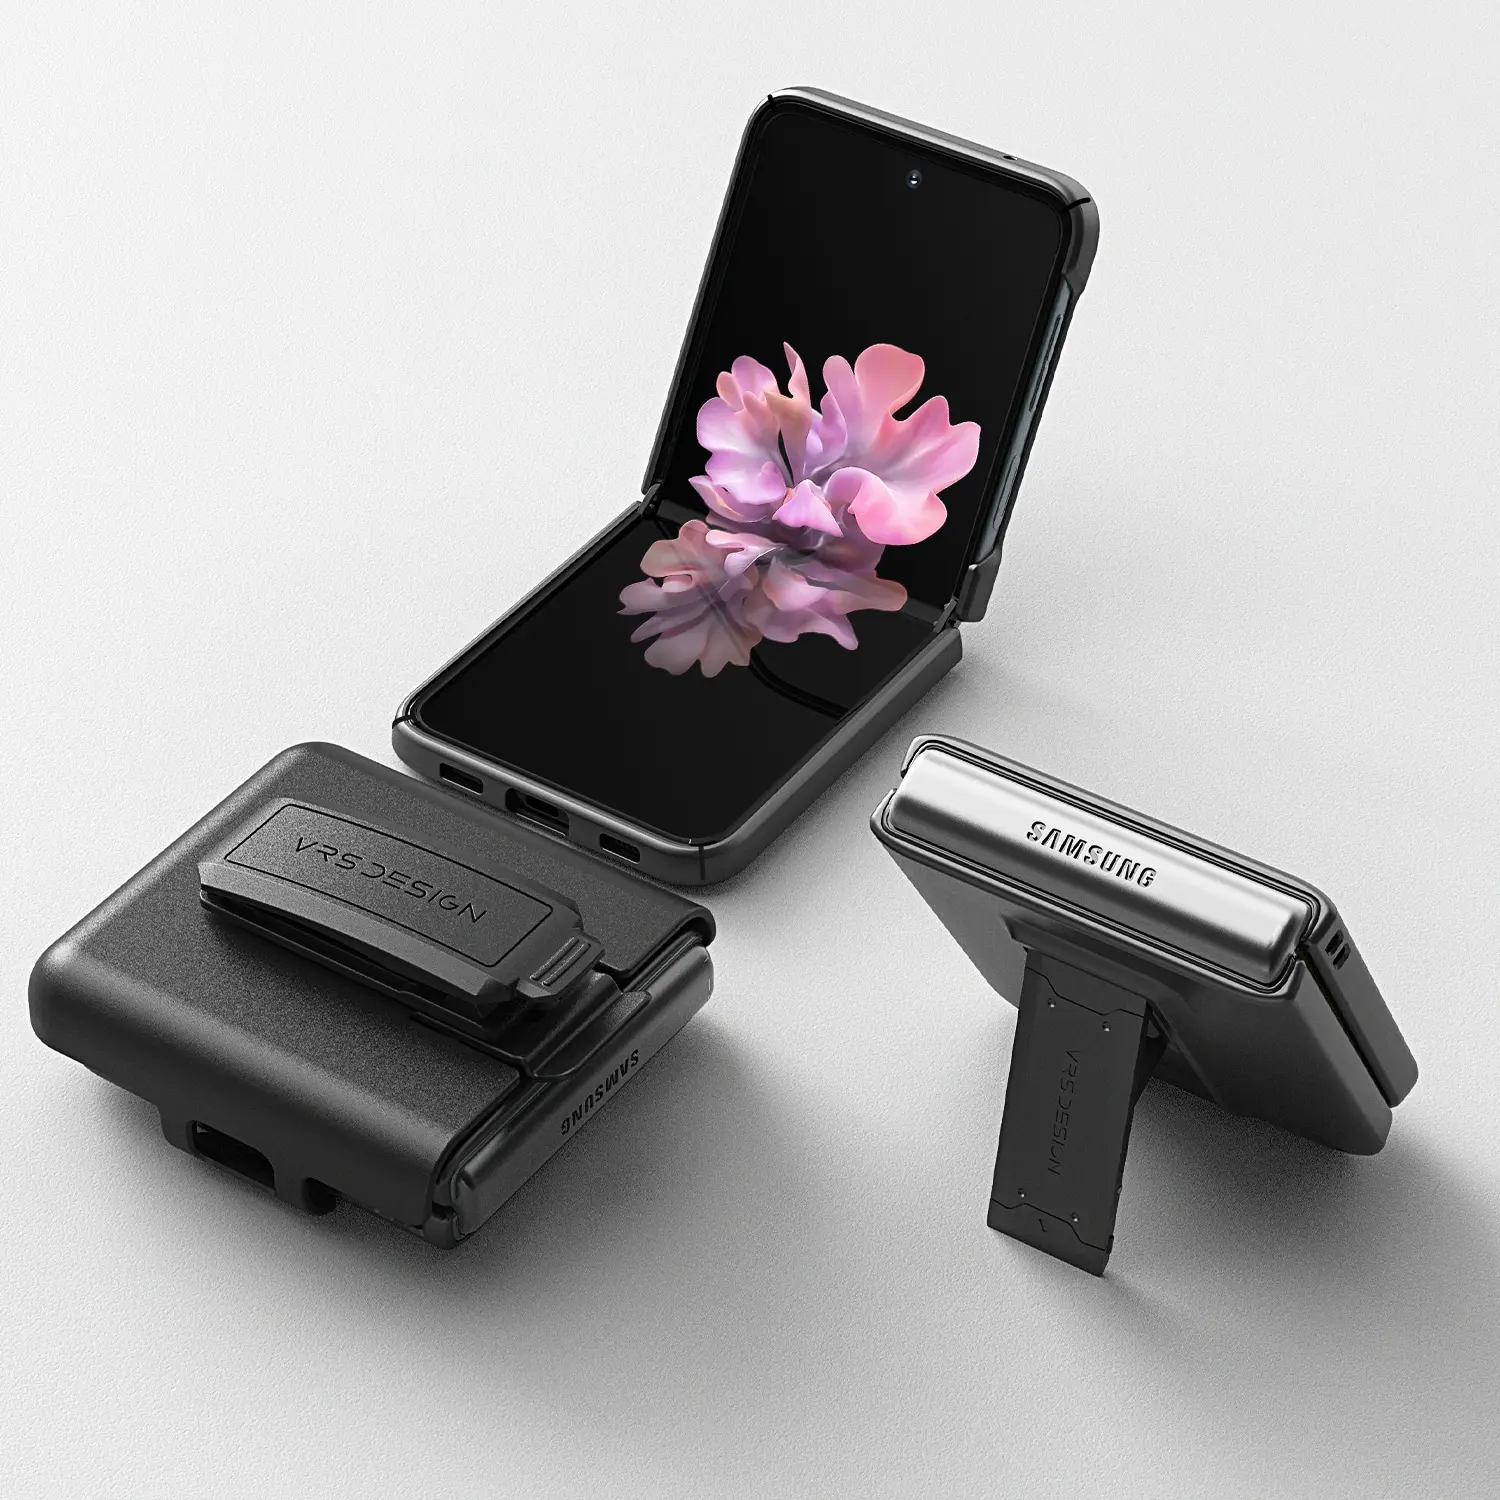 เคสกันกระแทก VRS รุ่น Quick Stand Modern + Multi Clip - Galaxy Z Flip 3 - Matte Black